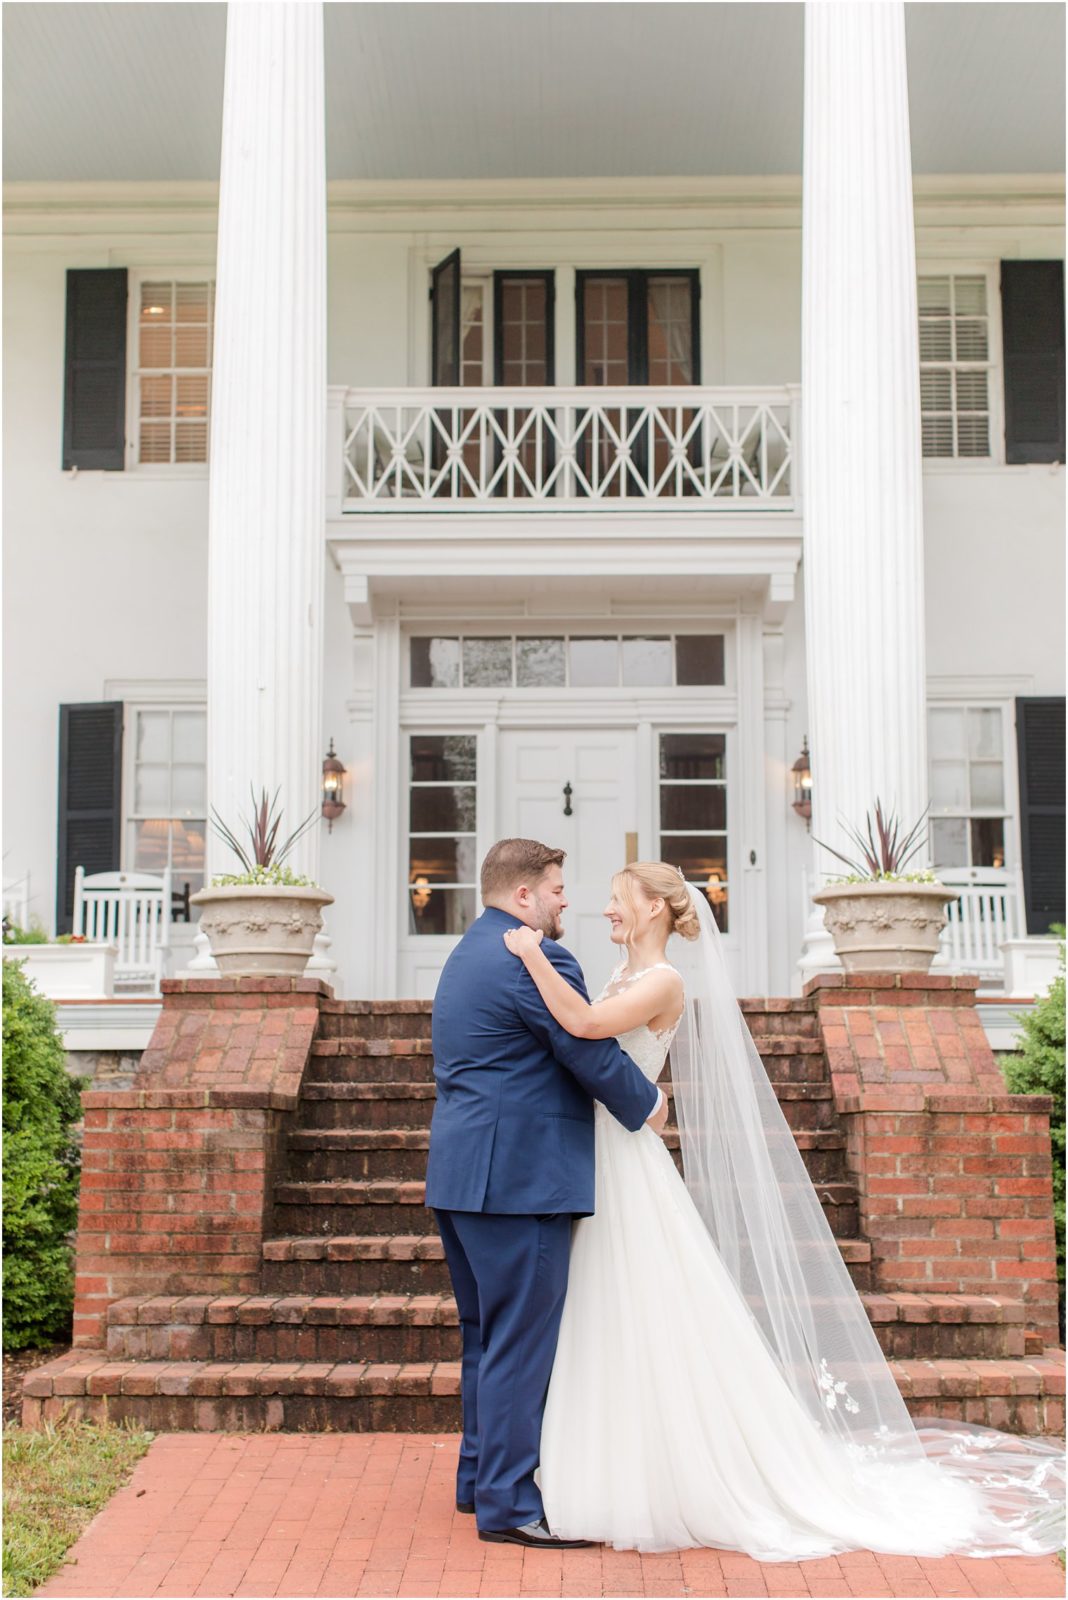 Rosemont Manor Wedding | Berryville, VA Wedding Day